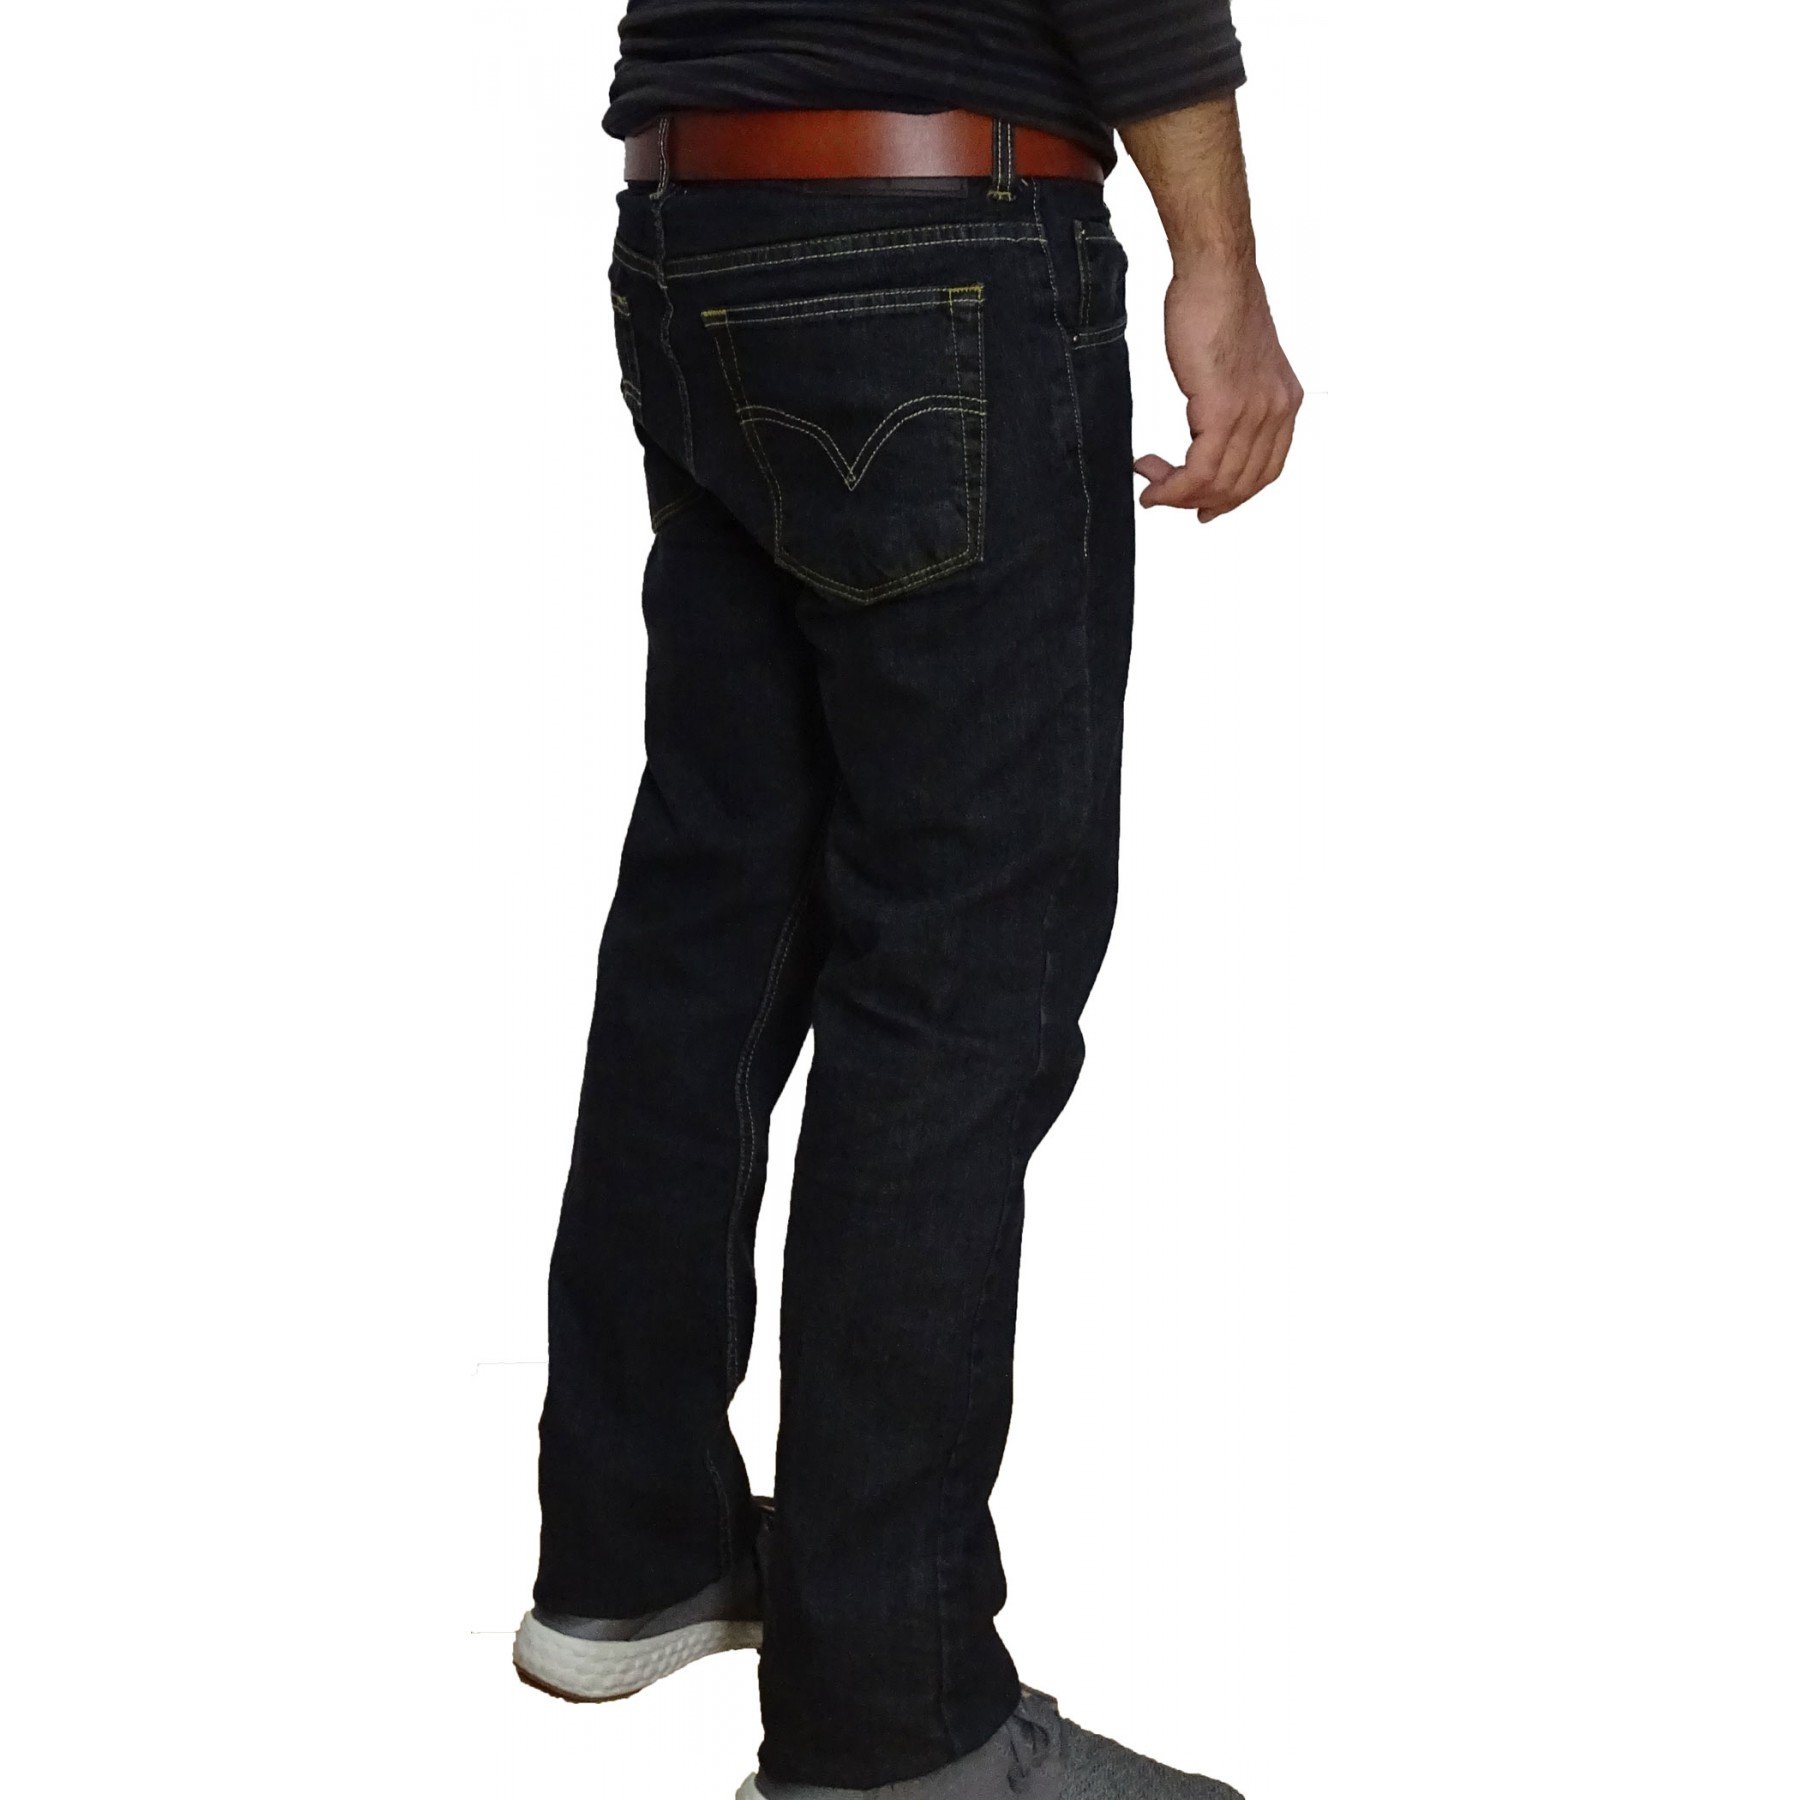 Παντελόνι Τζιν jean Luciano Faketti Ελαστικό Black Ελληνικής Ραφής σε χρώμα μαύρο